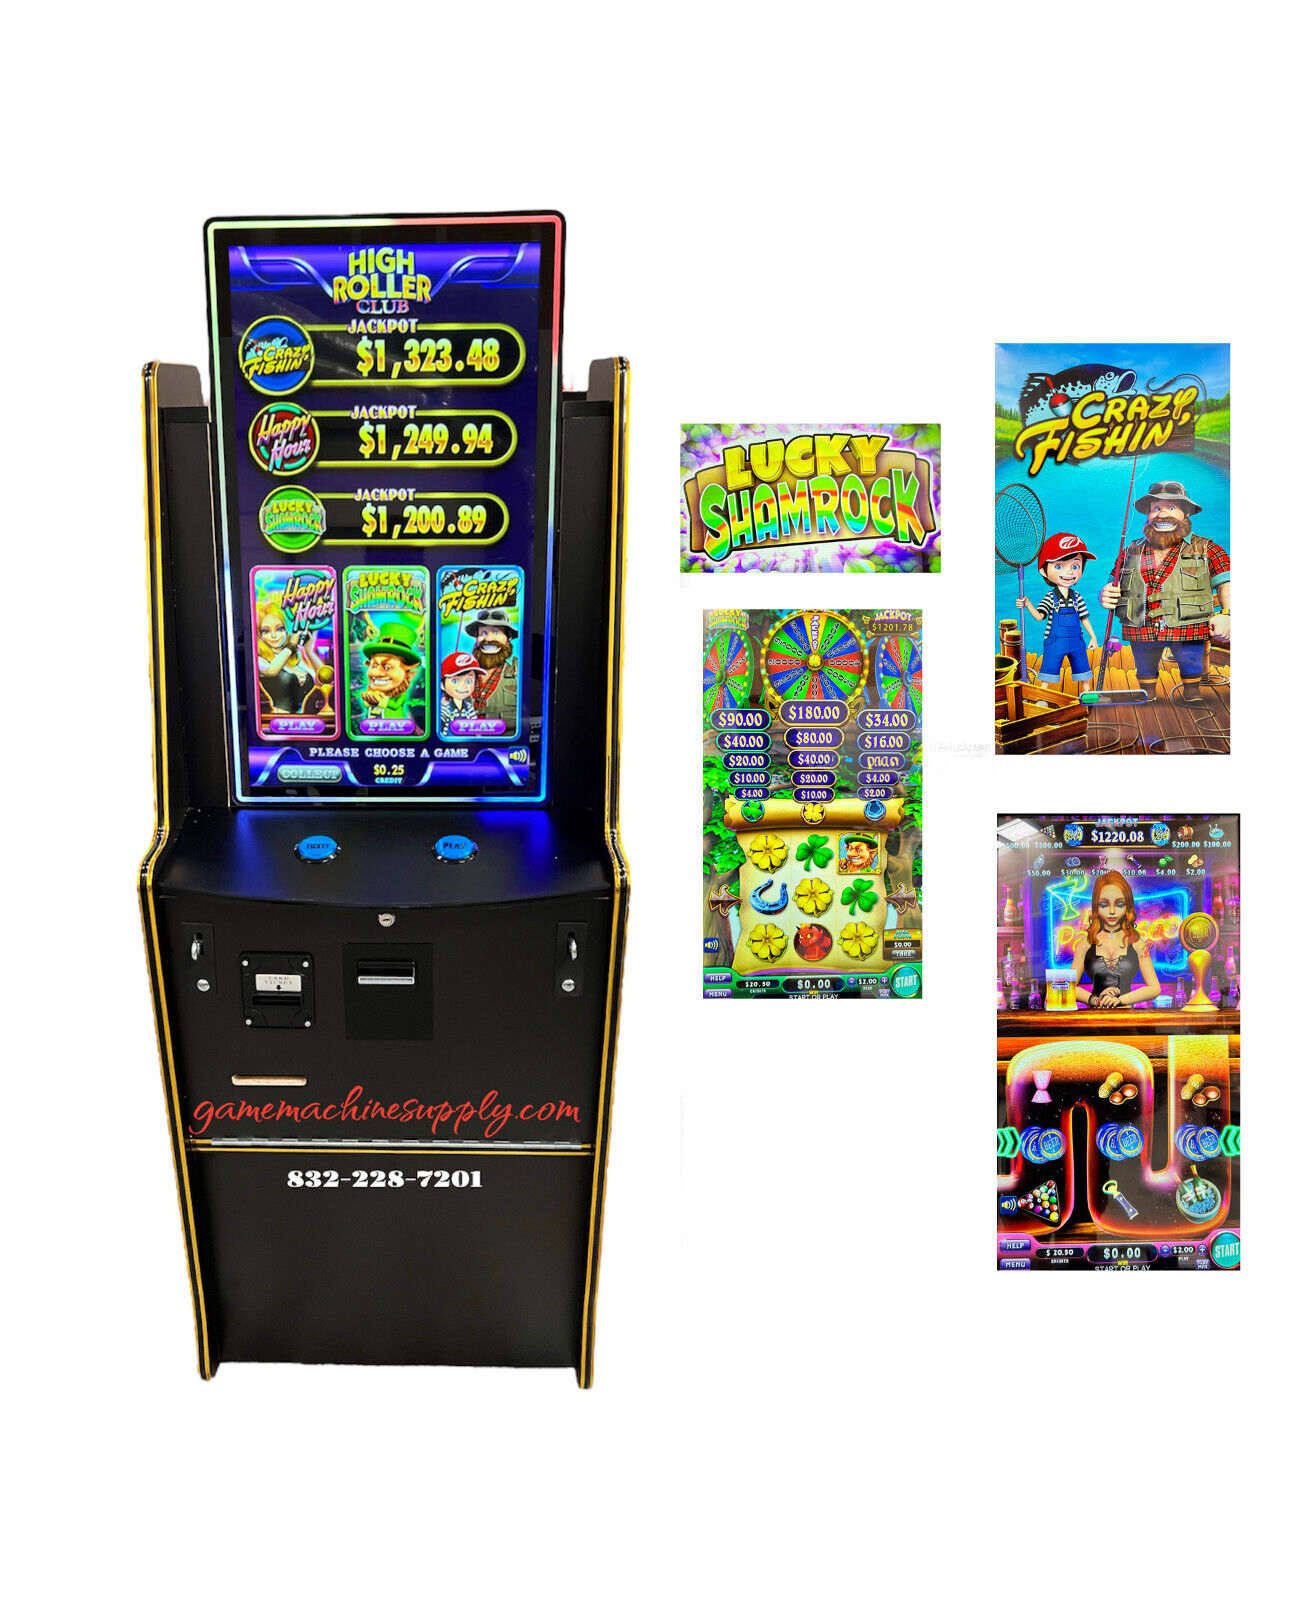 Skill Game - High Roller Club - 3 Games in 1 Casino Machine